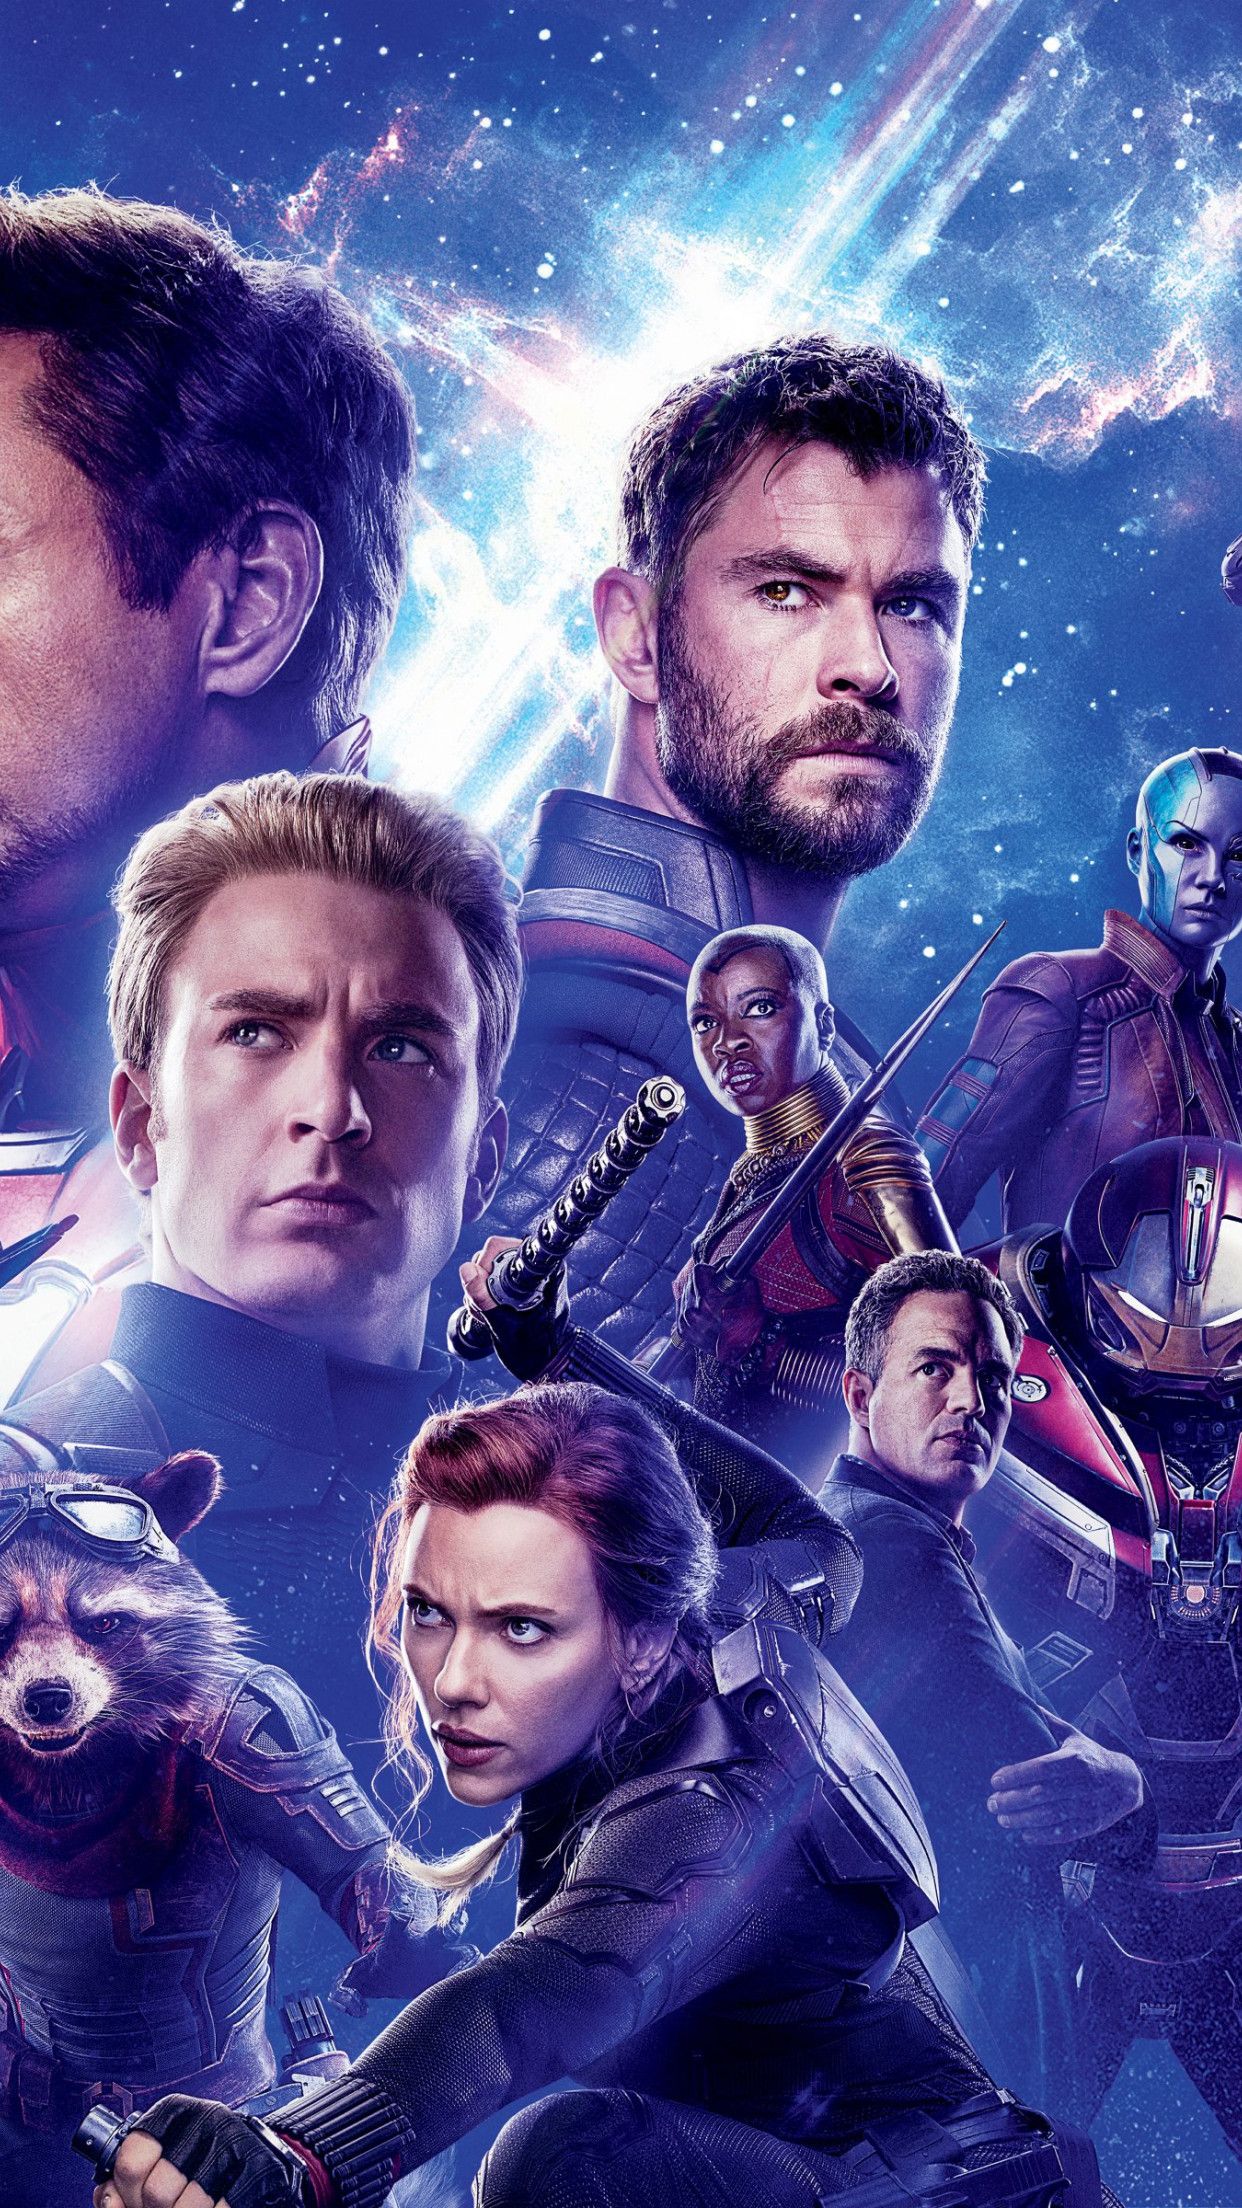 Download wallpaper: Avengers: Endgame 1242x2208